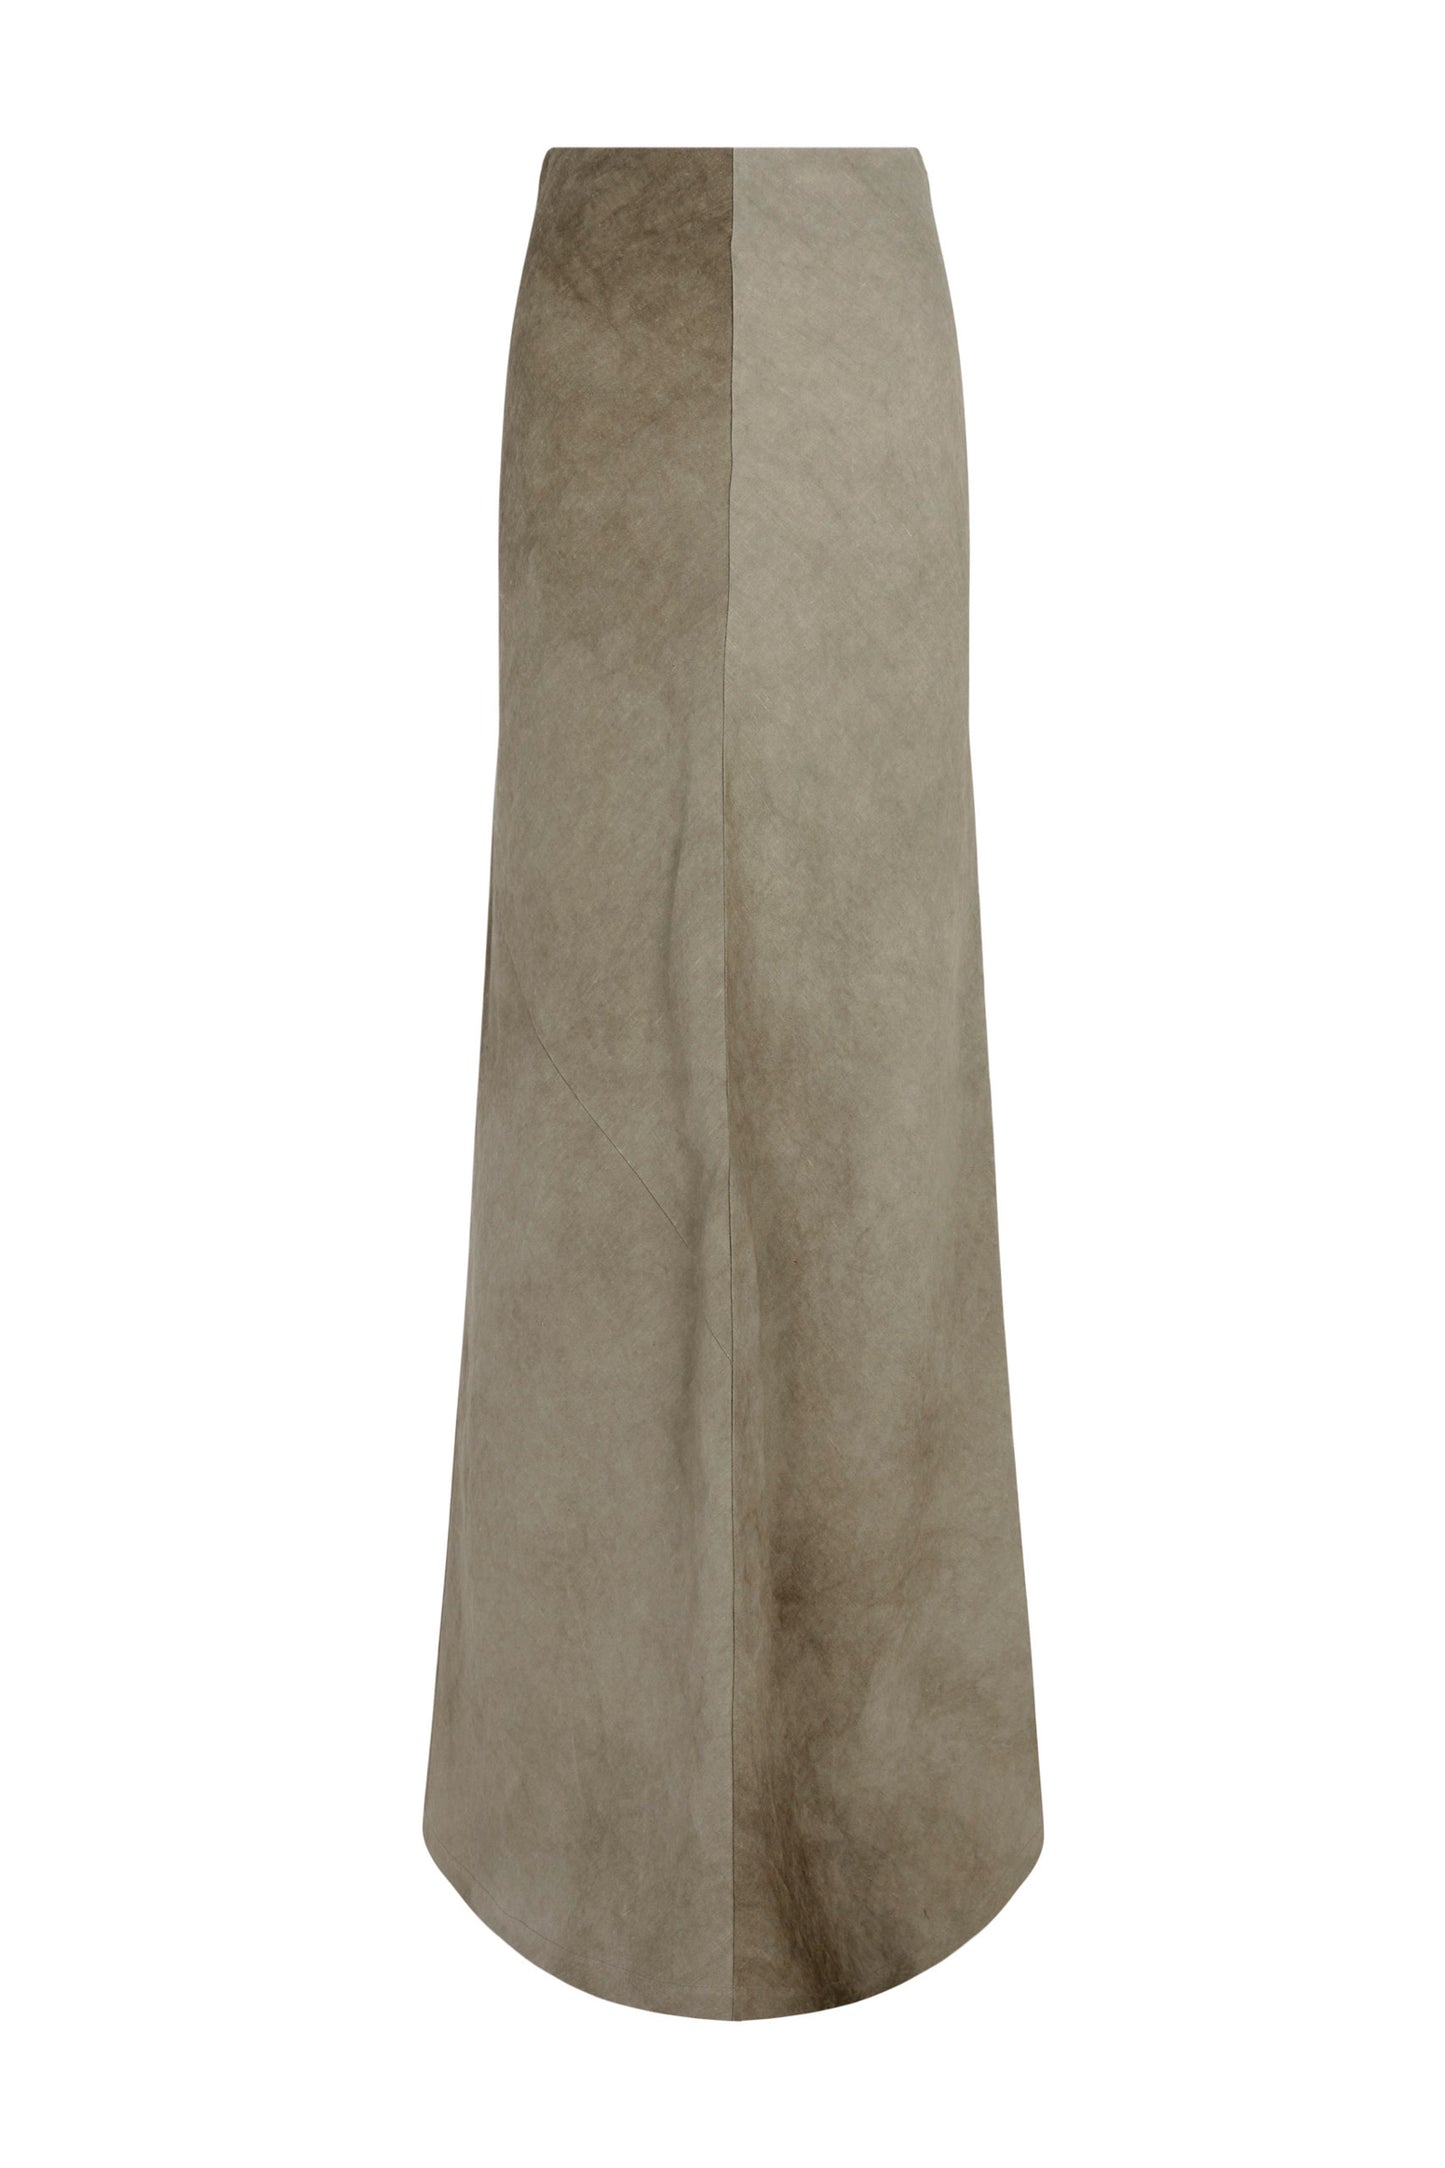 Bimba, falda larga en lino maltinto gris piedra